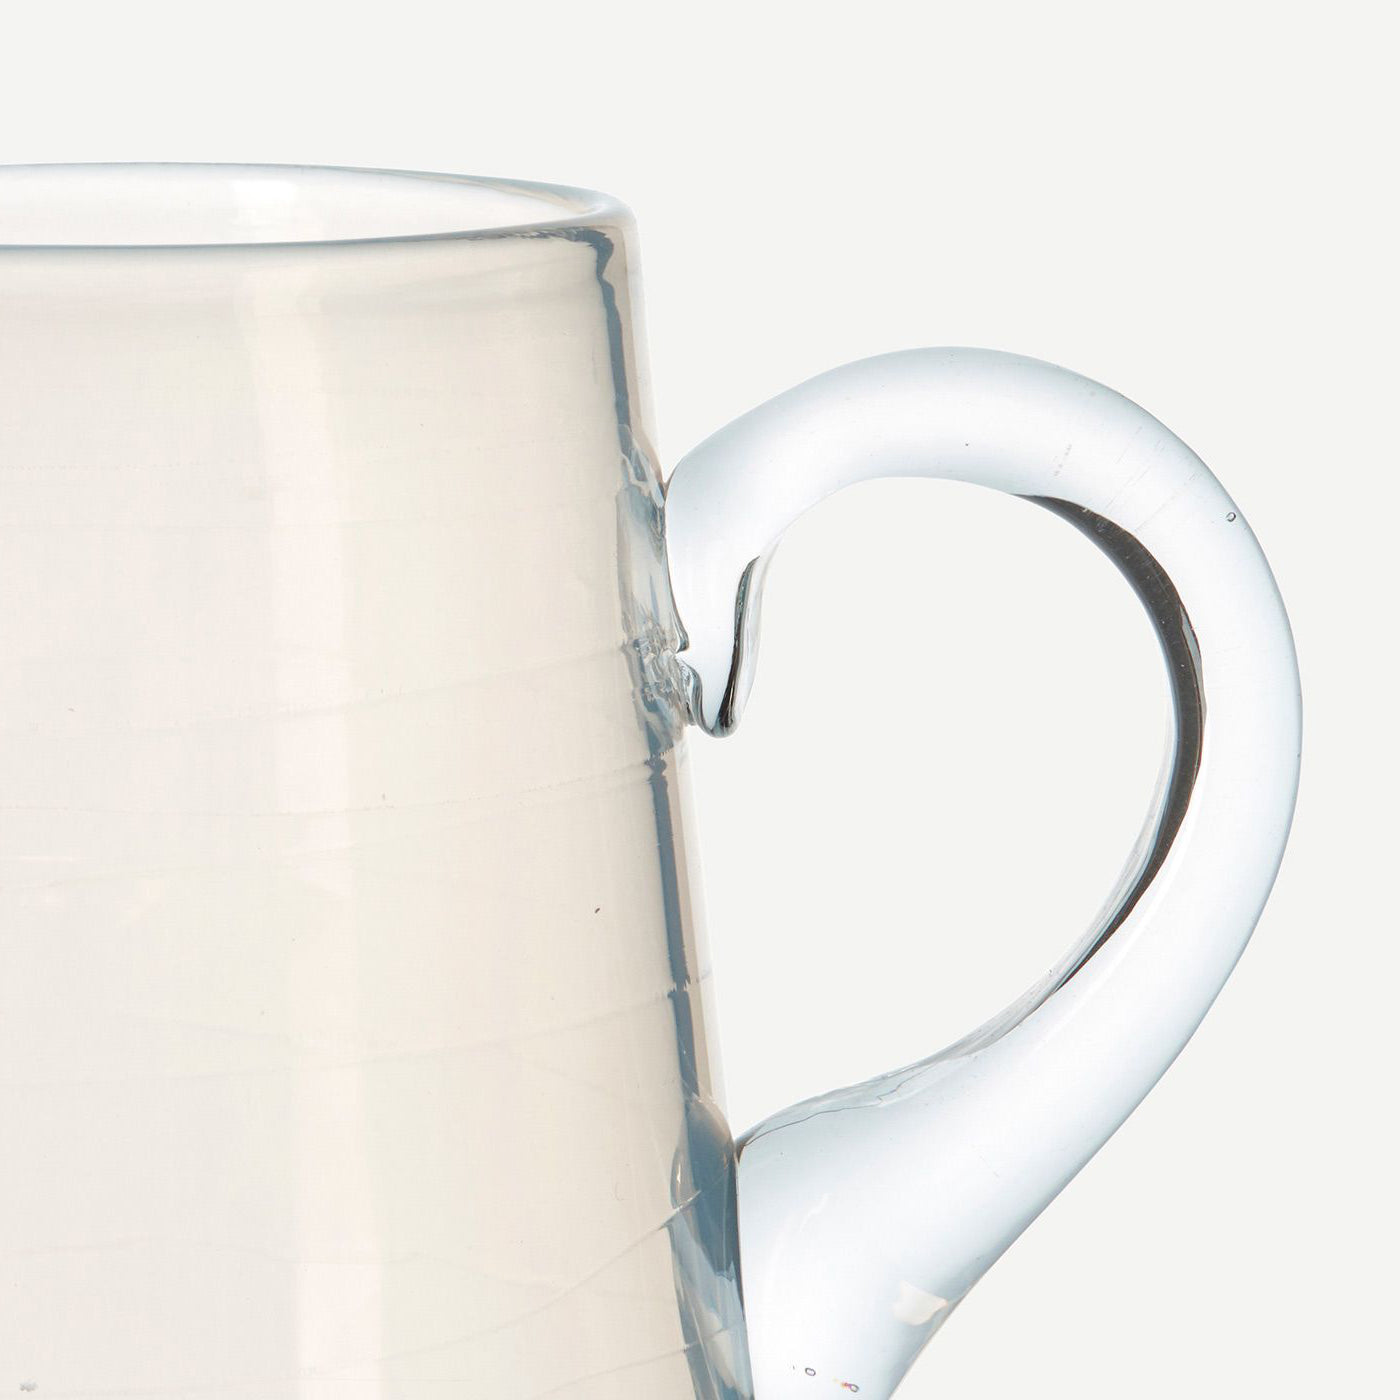 alabaster glass jug